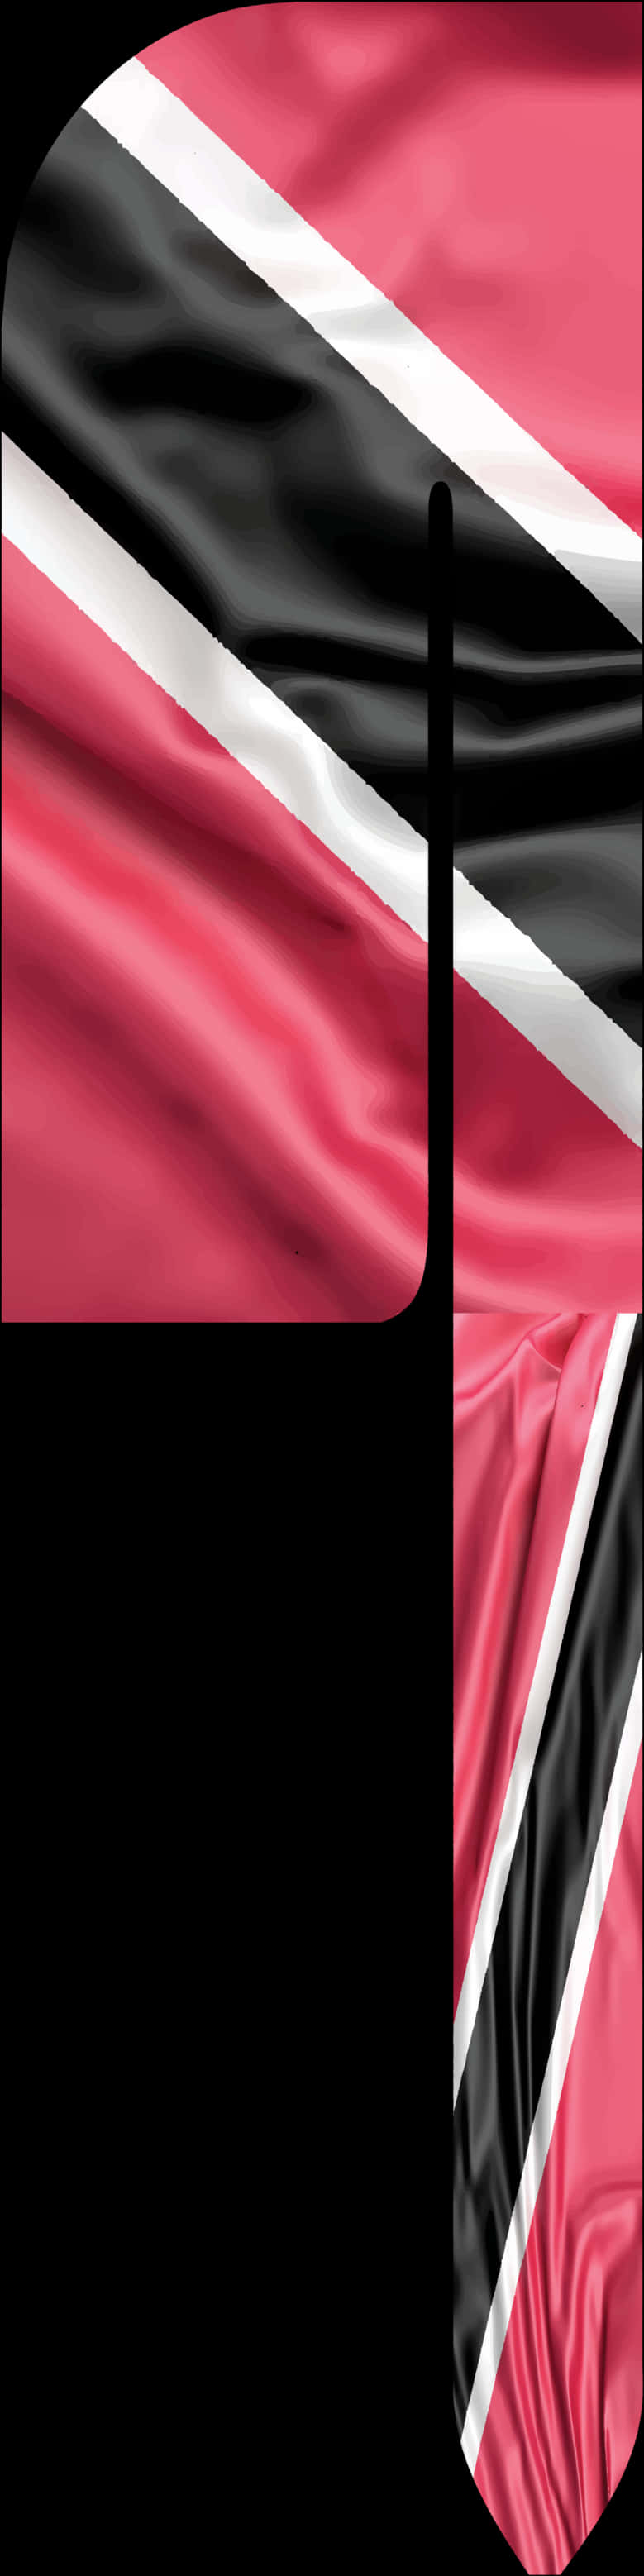 Trinidad Tobago Flag Durag Design PNG